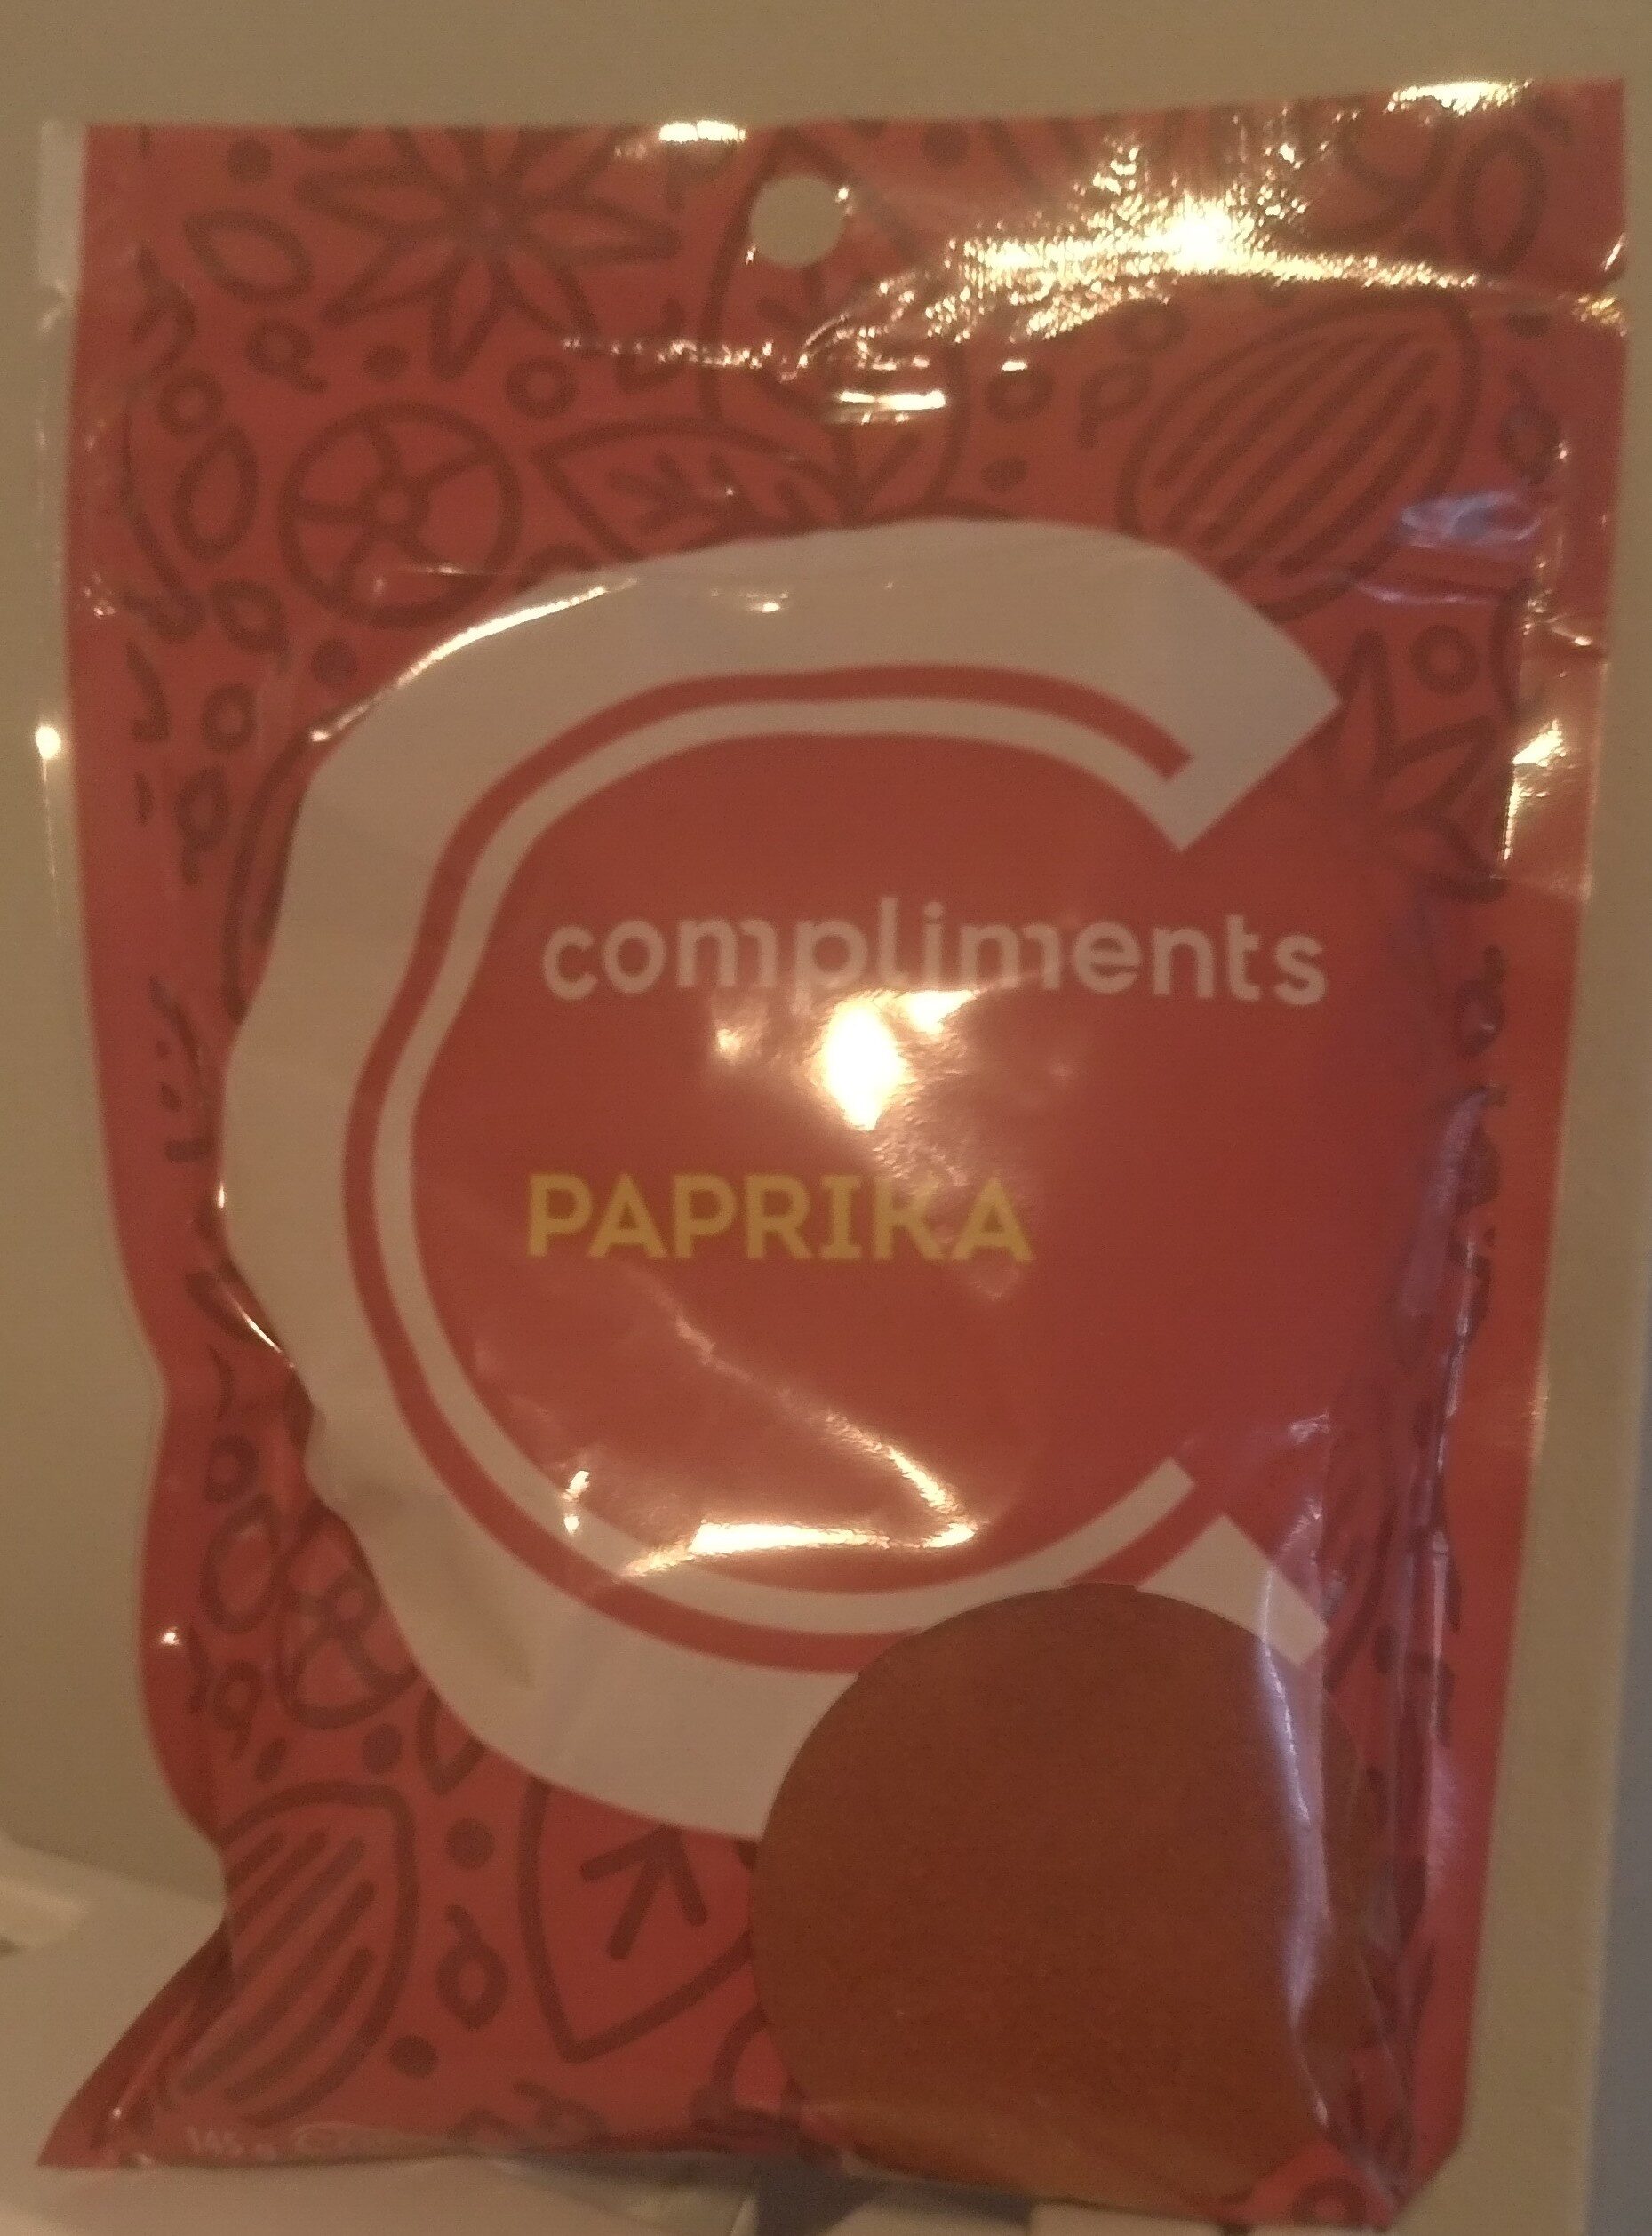 Paprika - Product - en